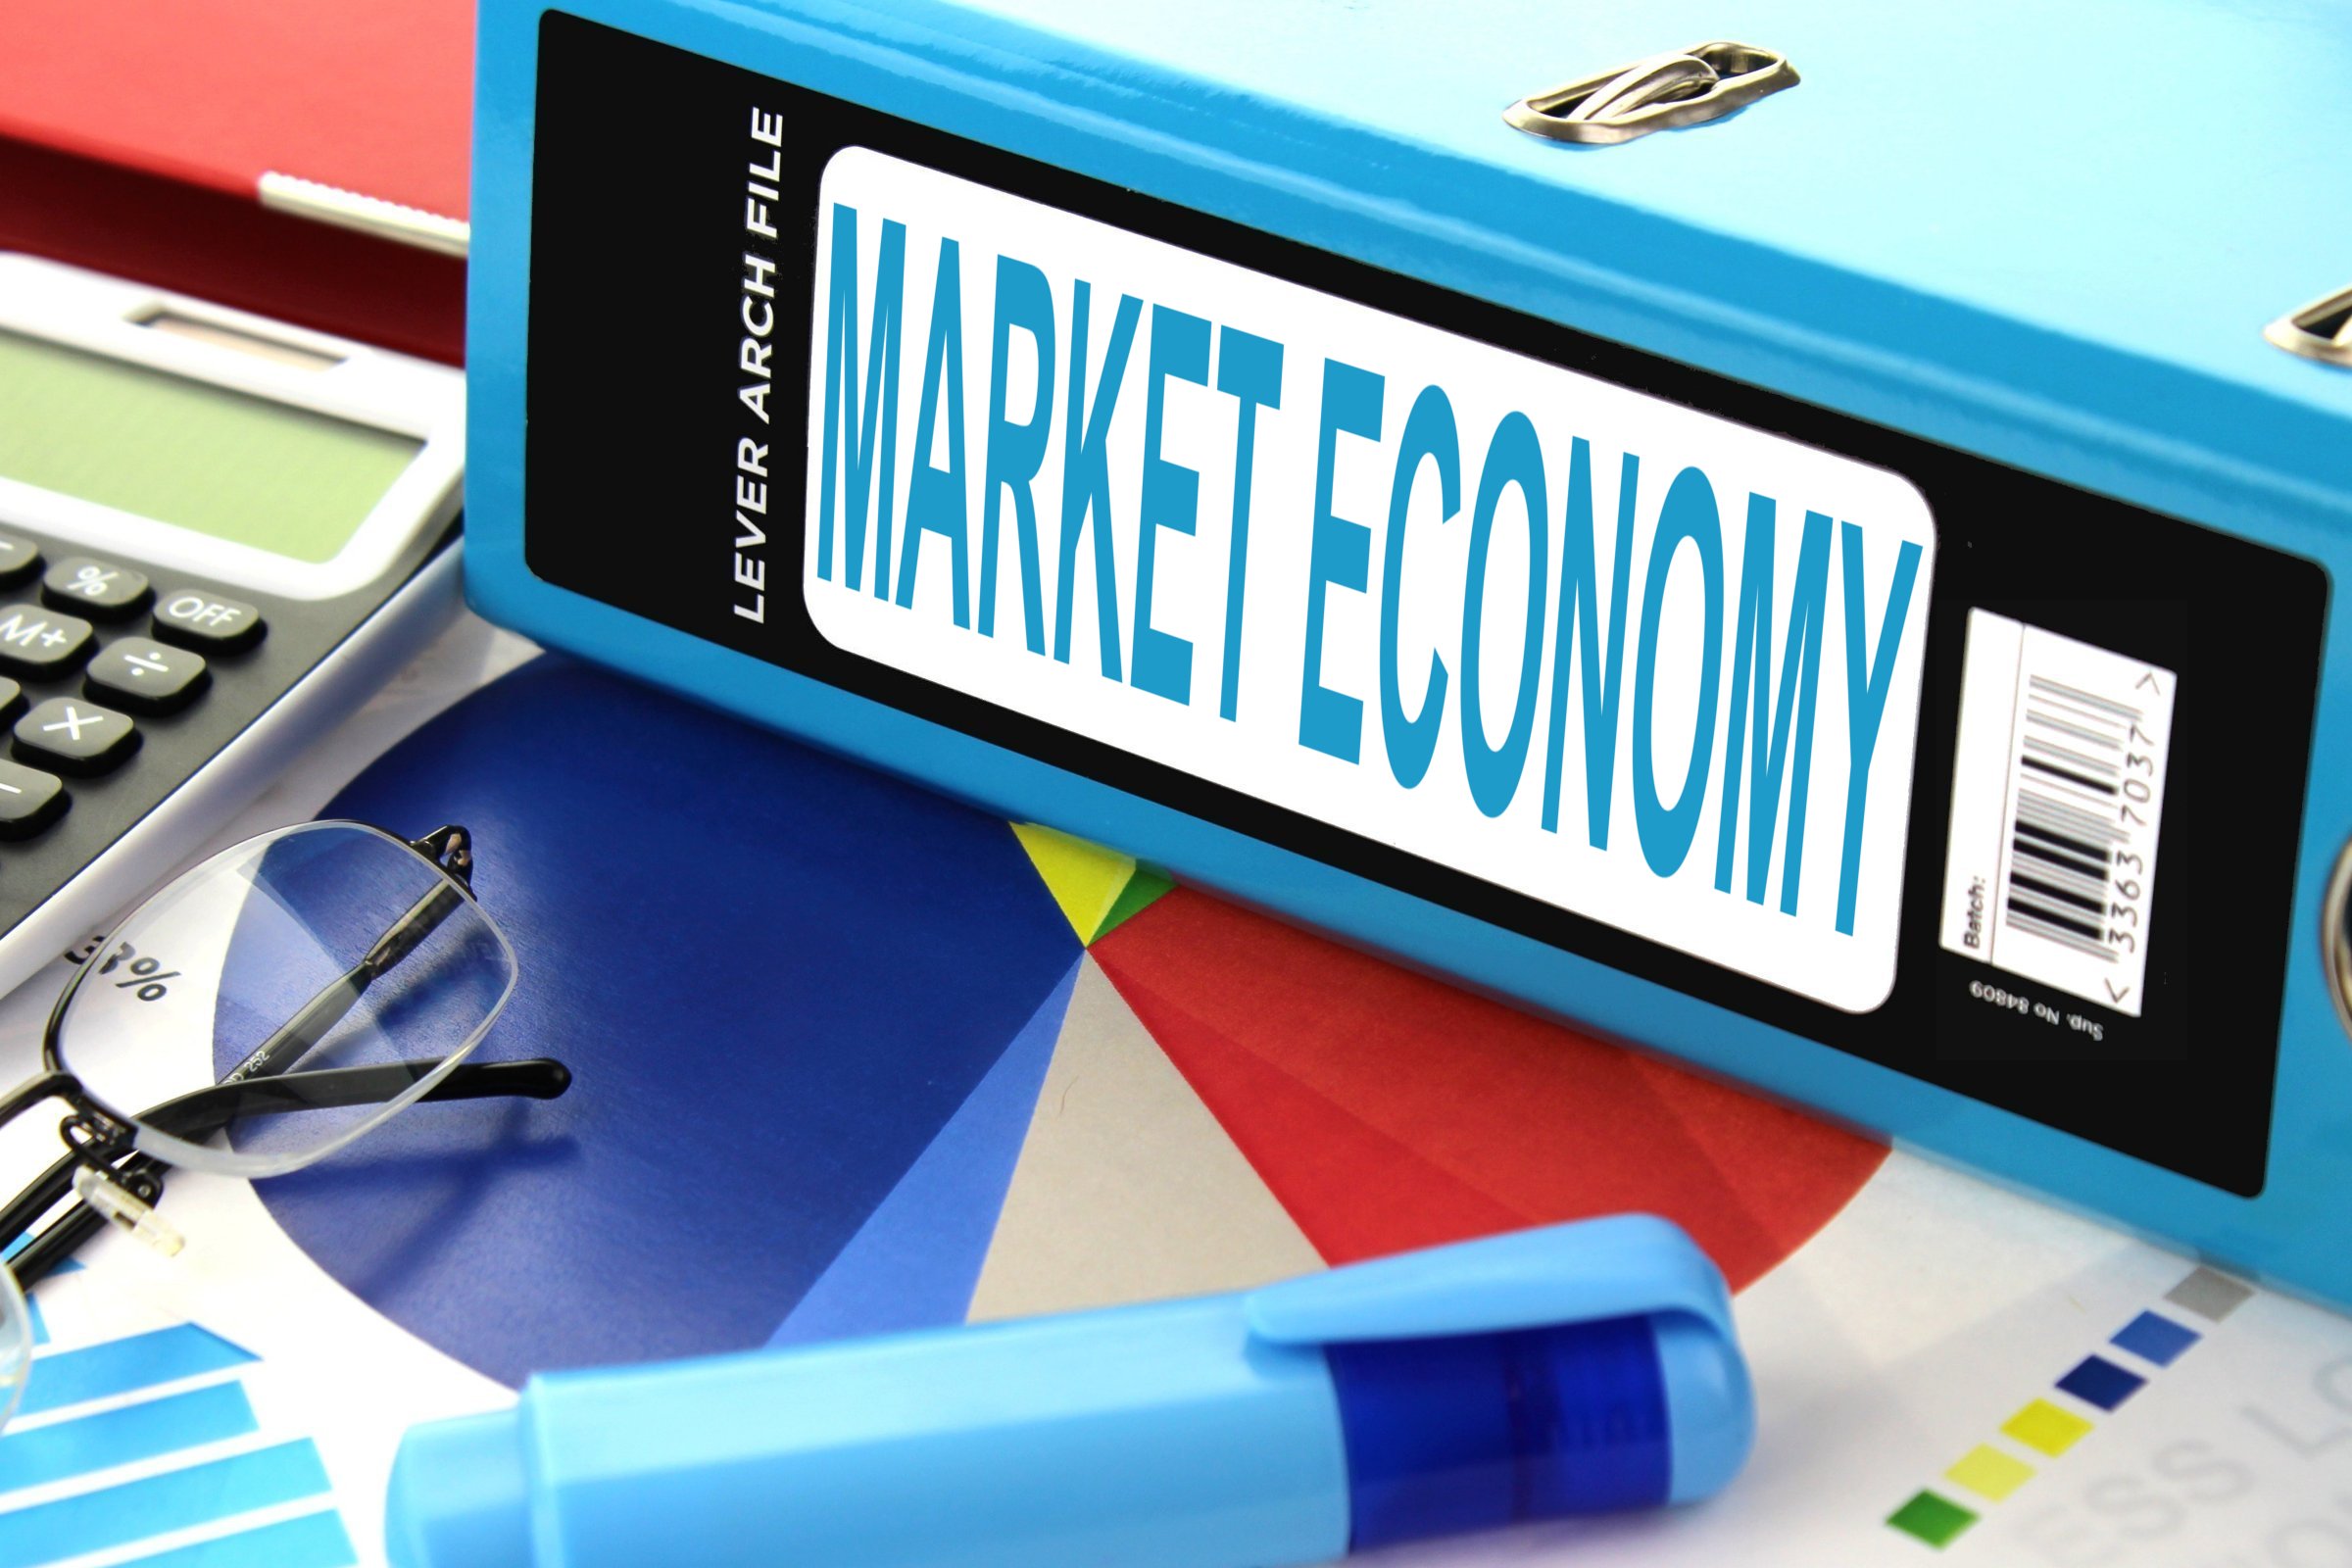 market economy